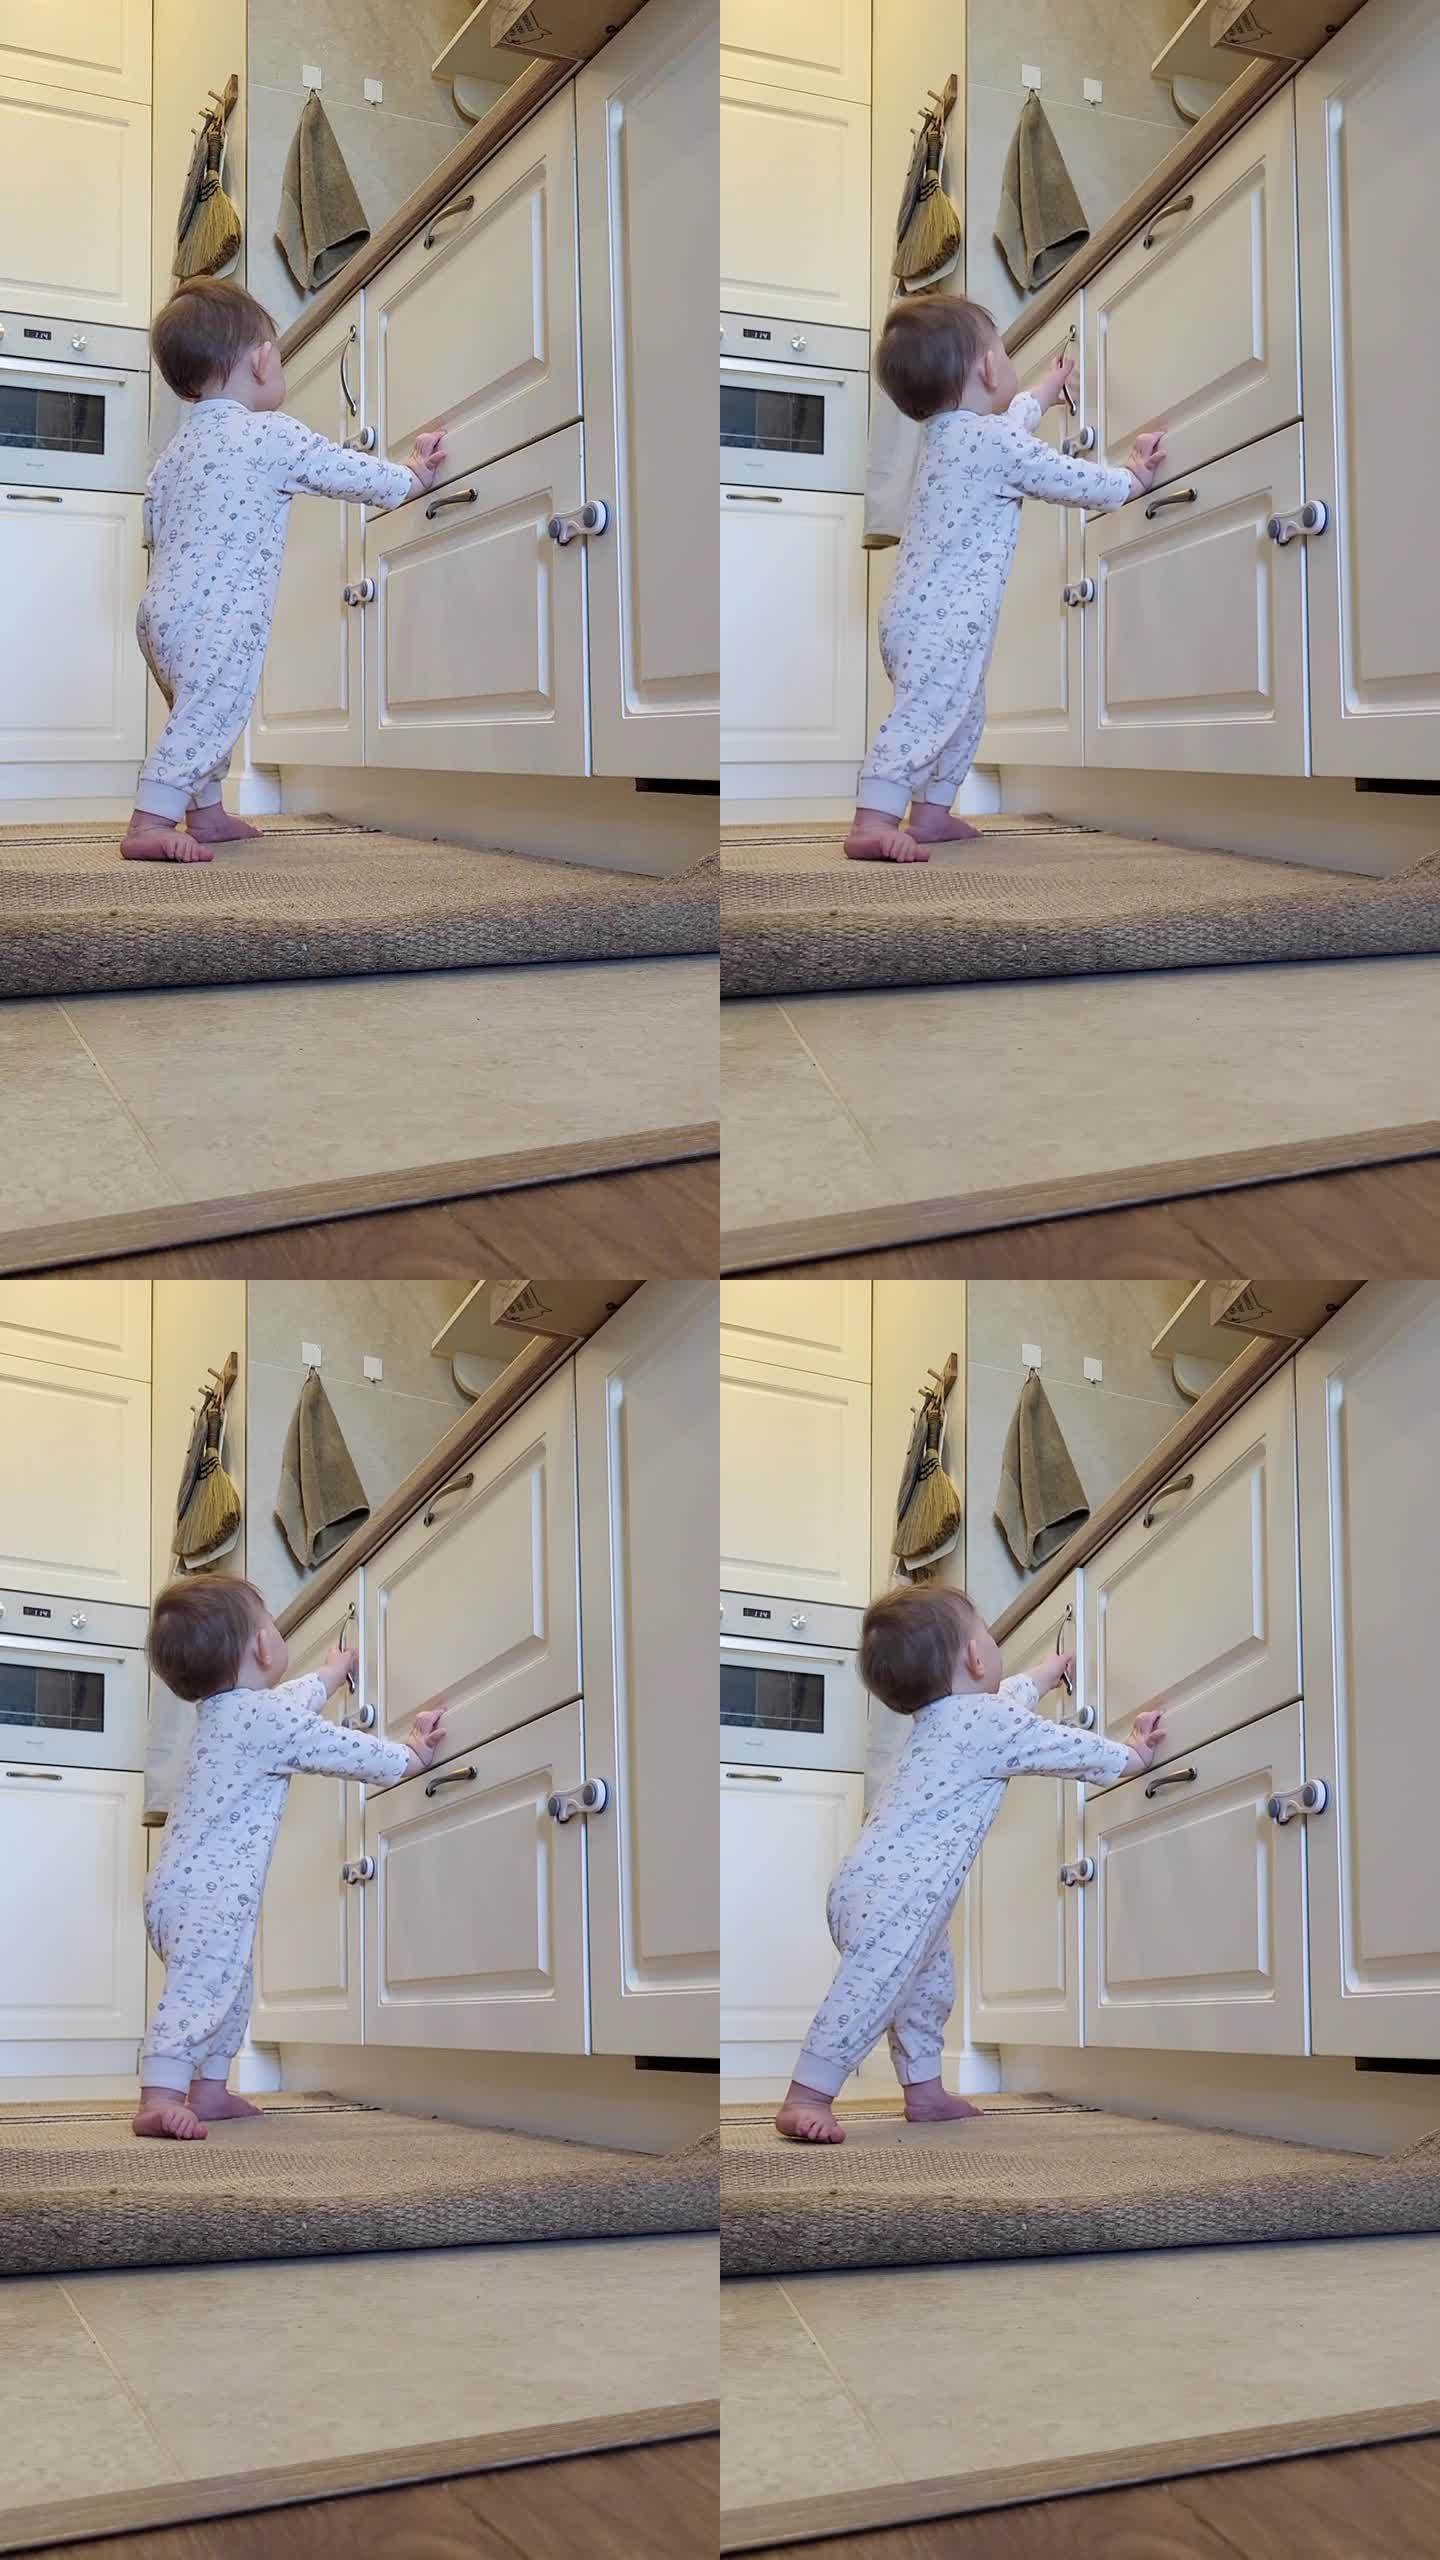 小婴儿打开了一个封闭的壁橱的门。一个好奇的孩子试图打开家具里的抽屉。10个月大的孩子